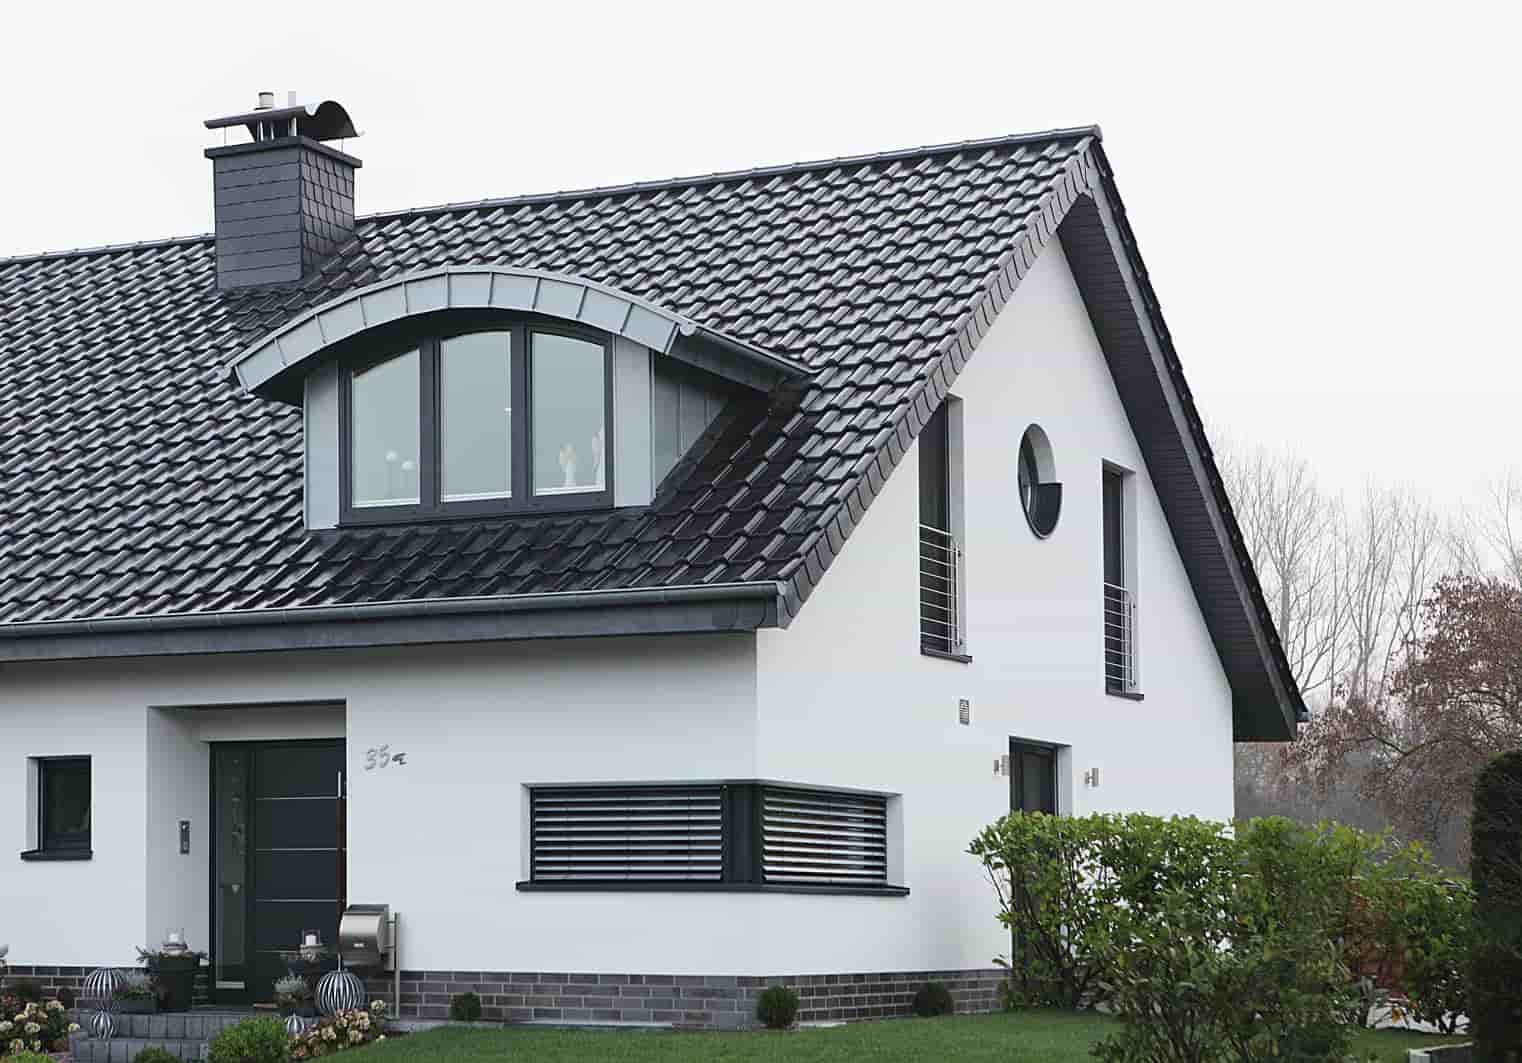 Wohnhaus mit Kunststofffenstern im Dach